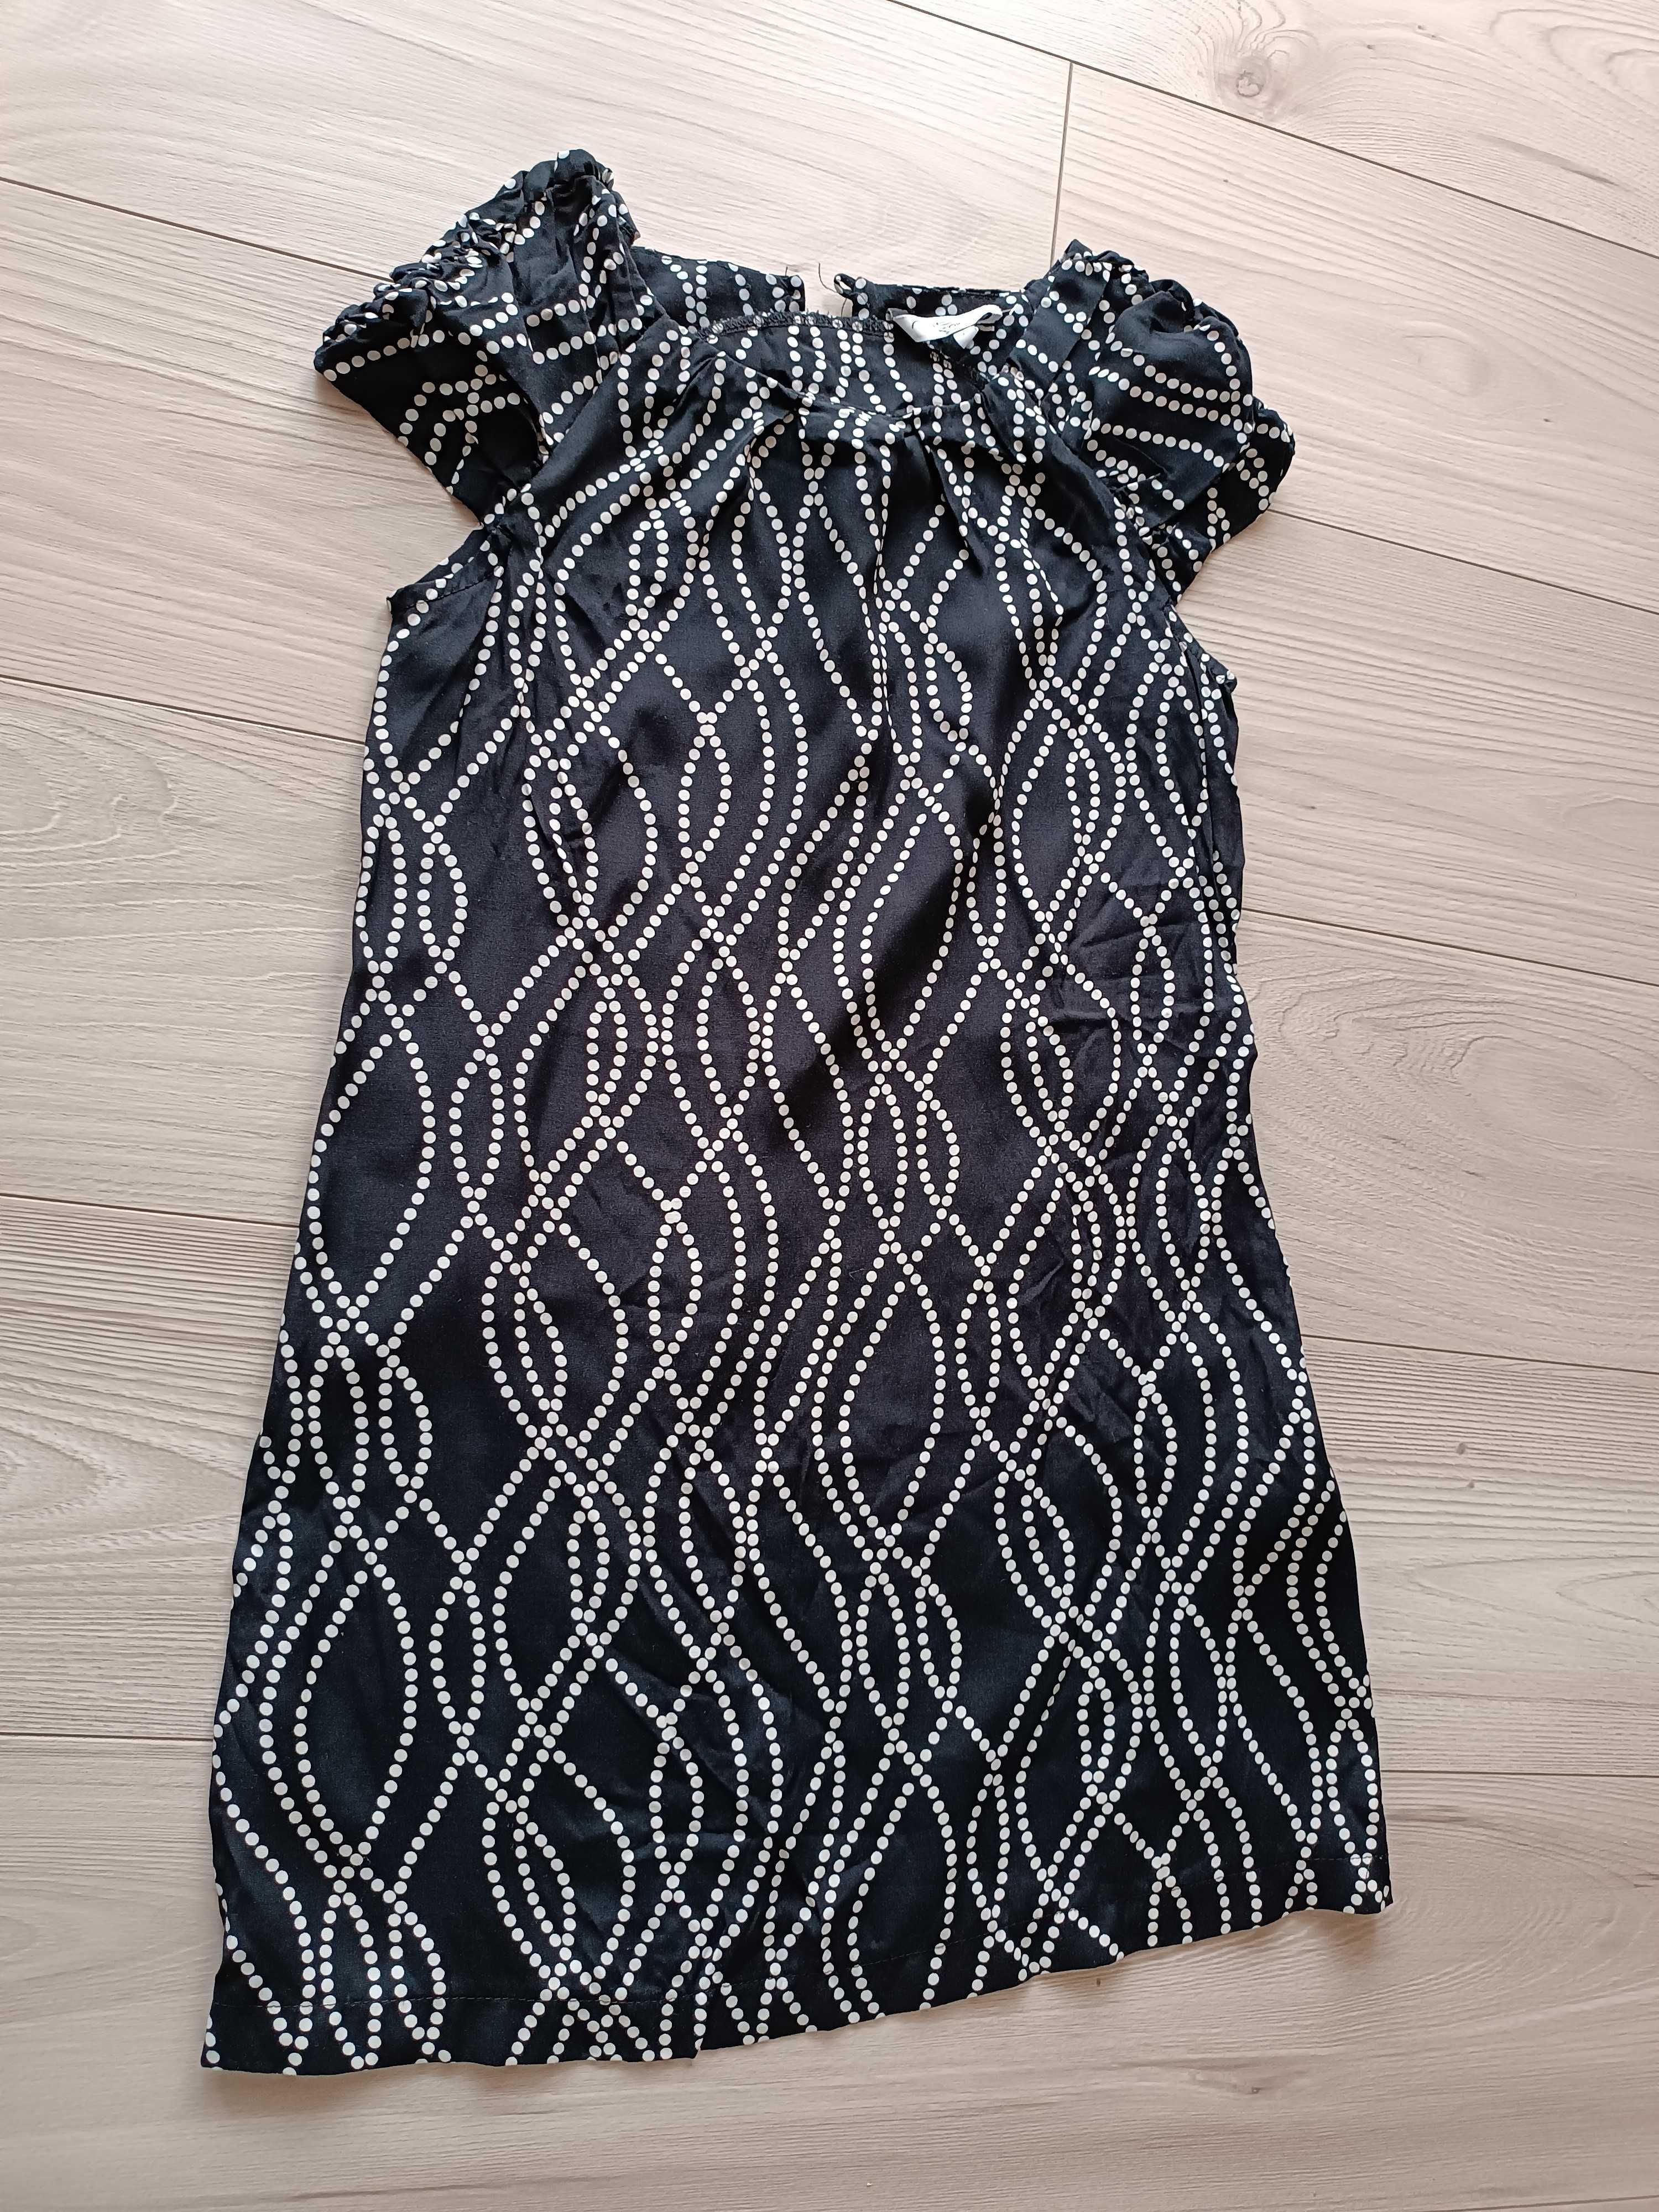 Sukienka damska czarna krótki rękaw używana, rozmiar S (36)